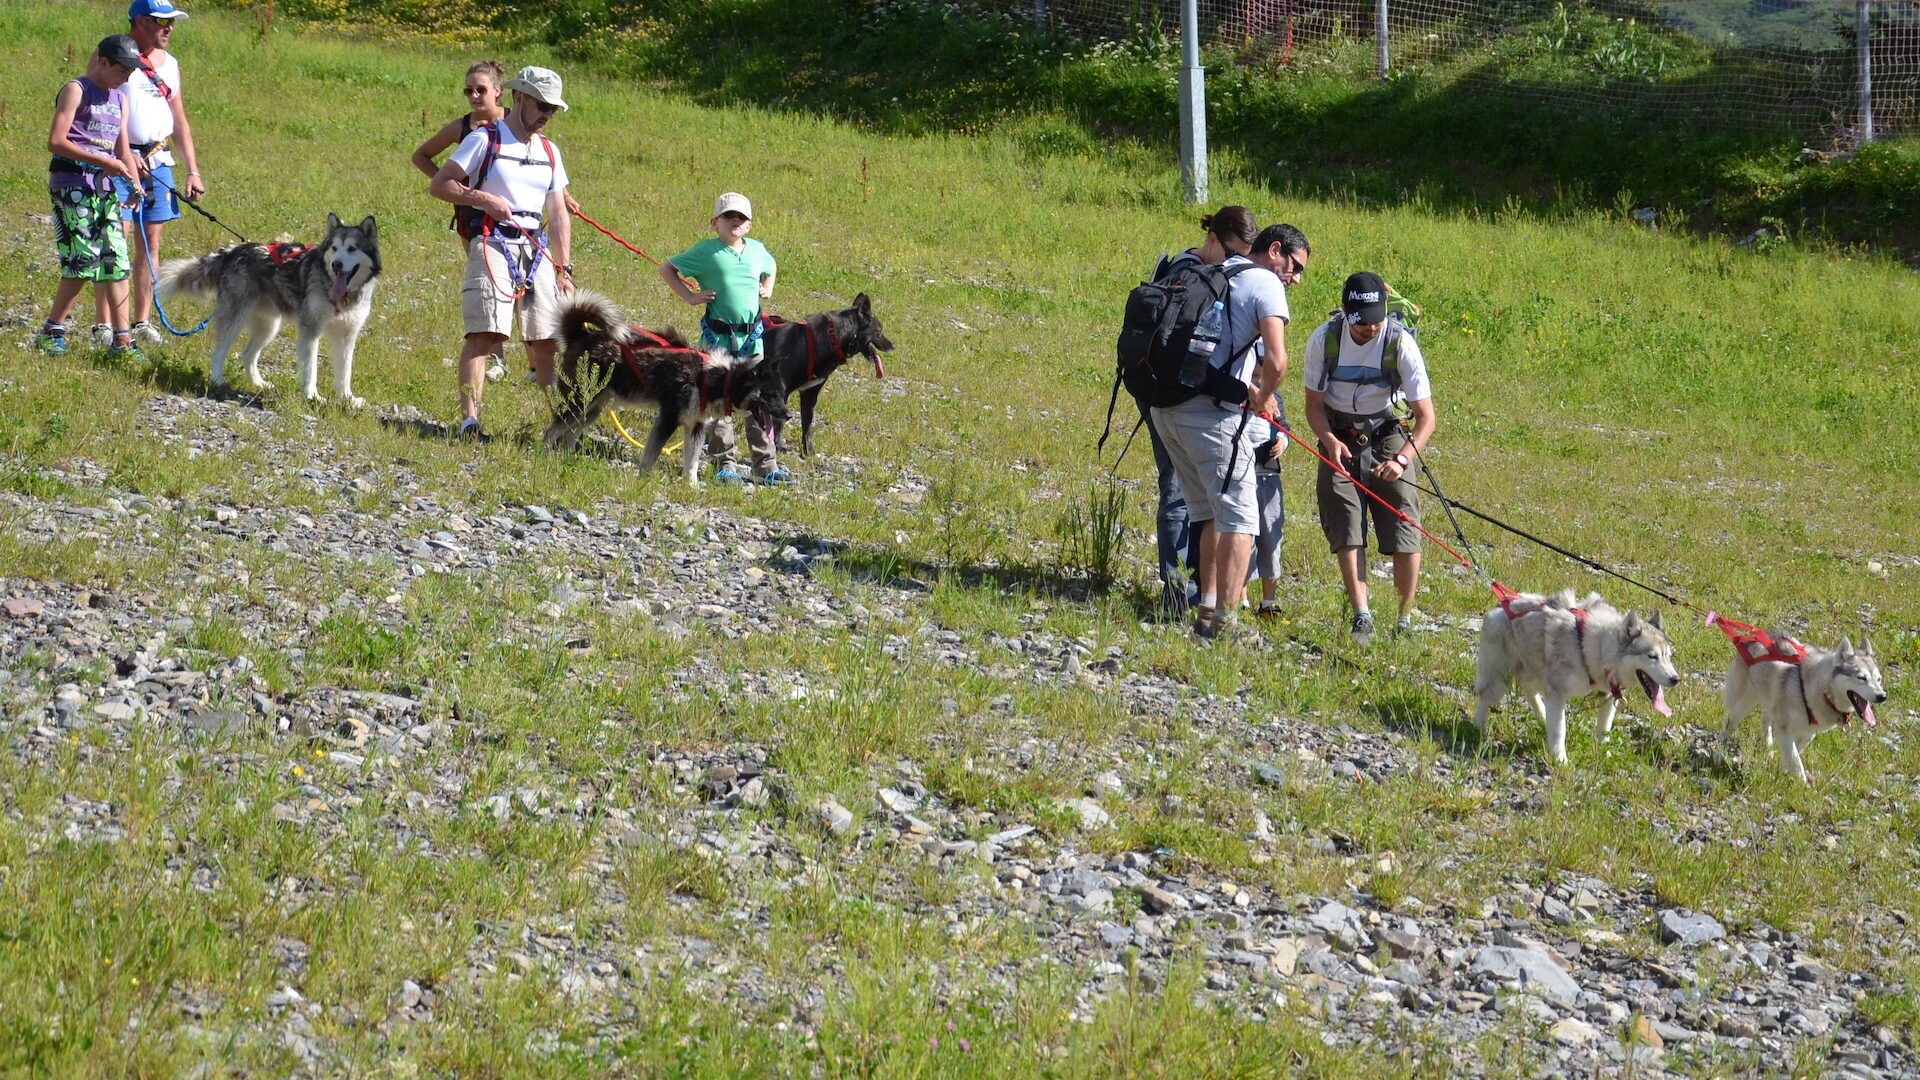 Groupe faisant une balade en été arnachés à des chiens